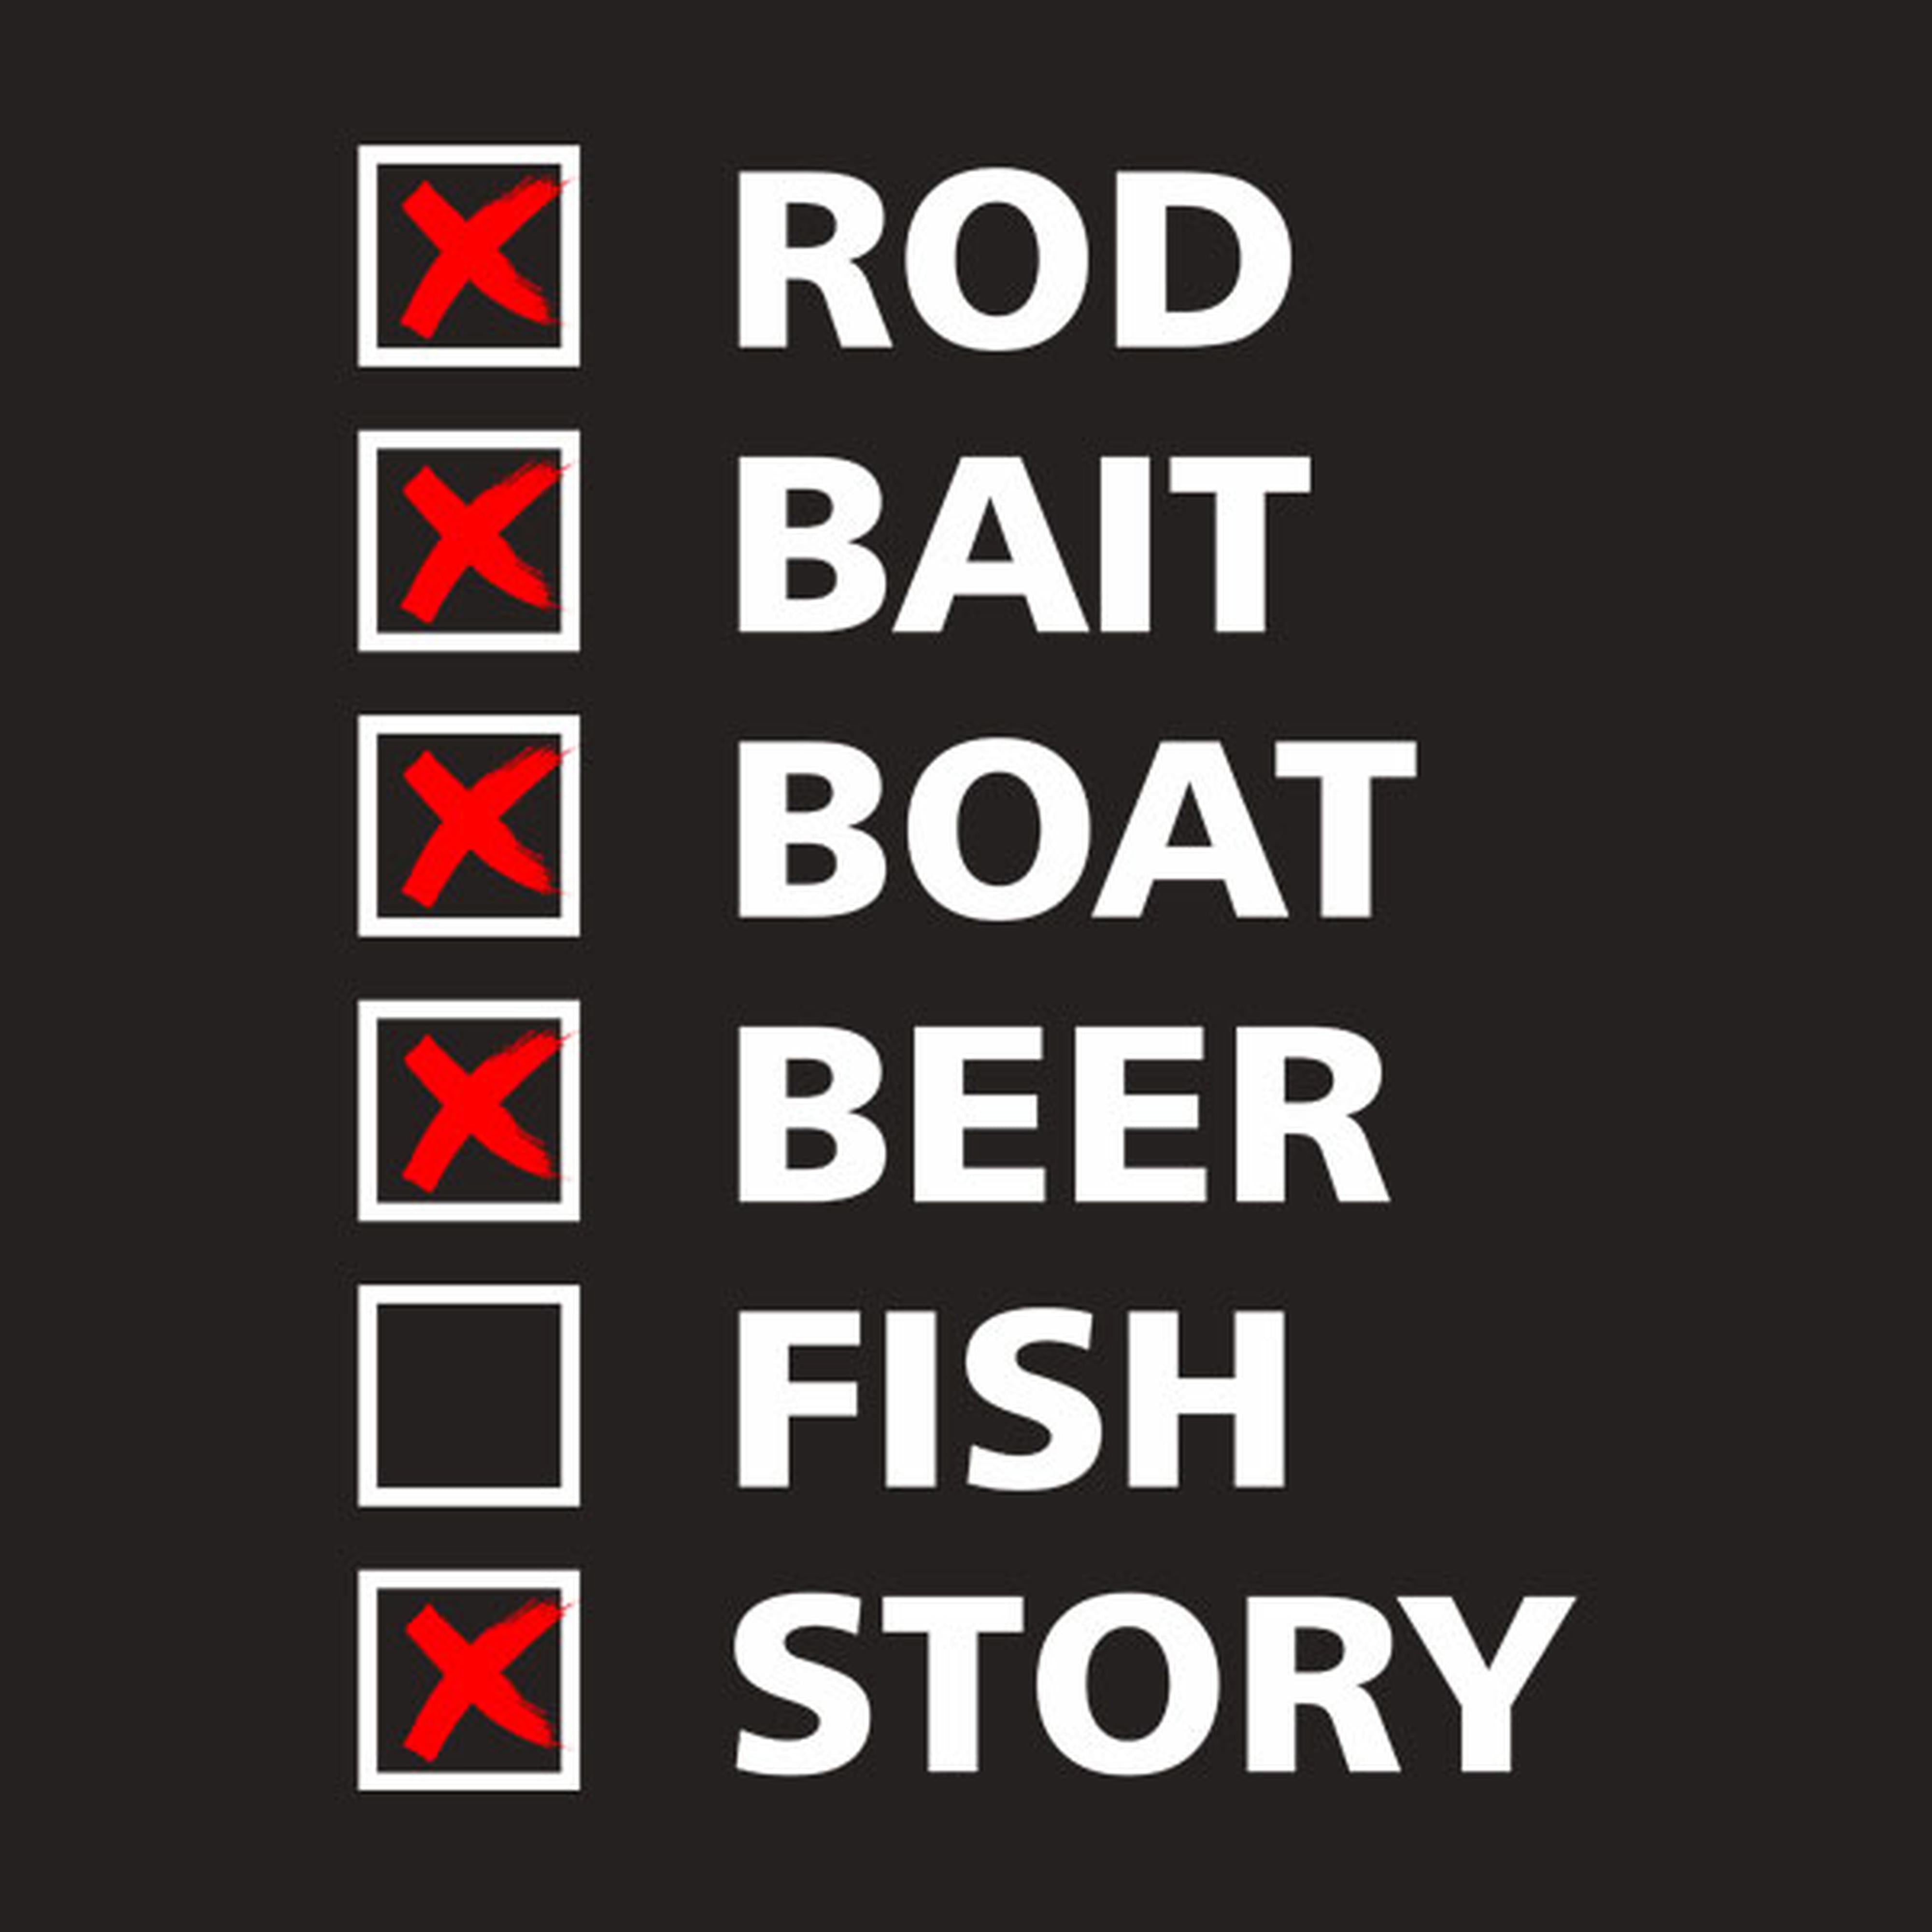 Fishing checklist - T-shirt